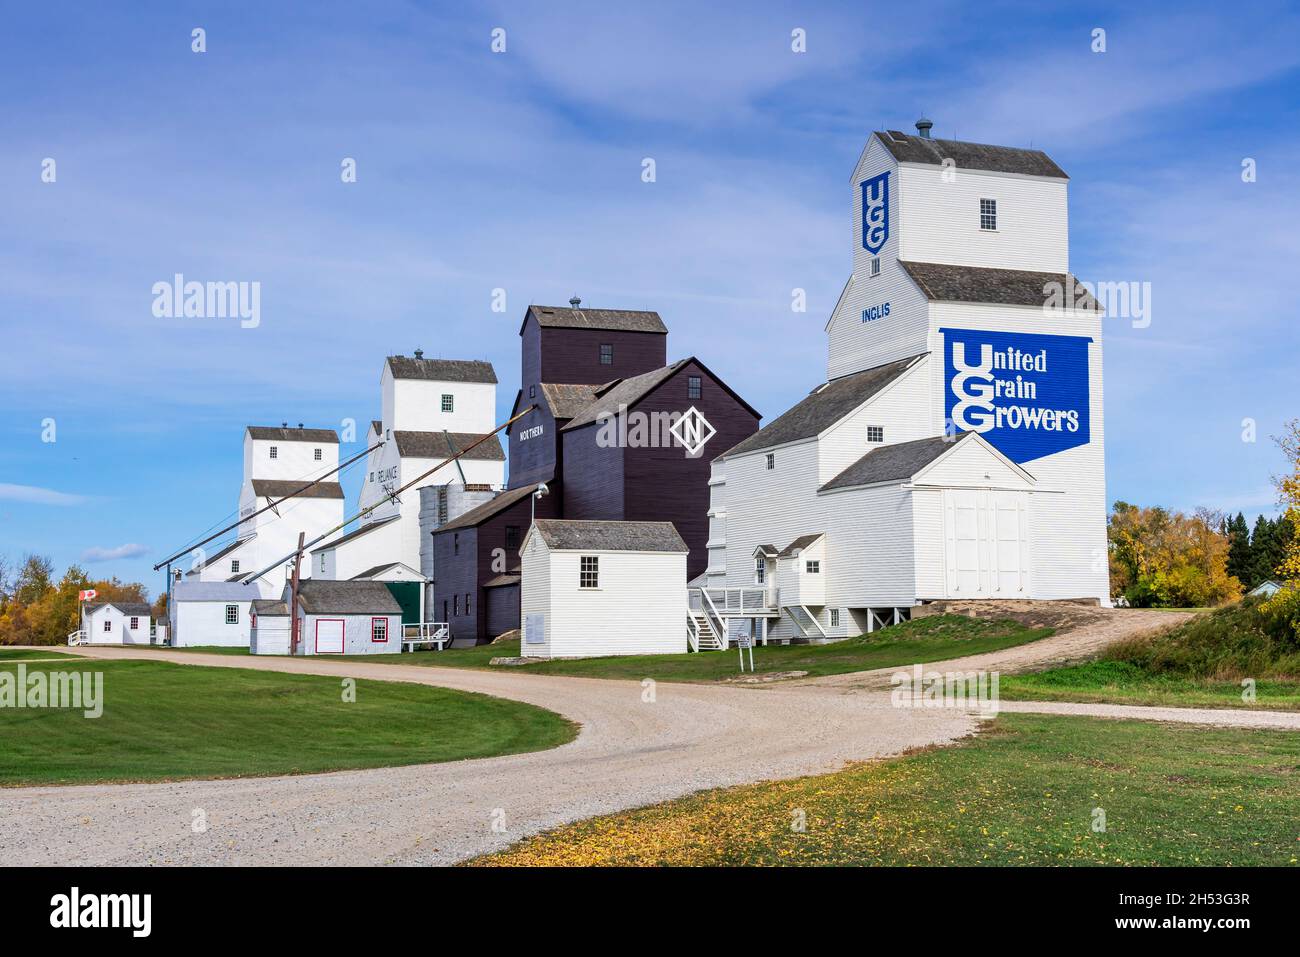 Die restaurierten historischen Getreideaufzüge in Inglis, Manitoba, Kanada. Stockfoto